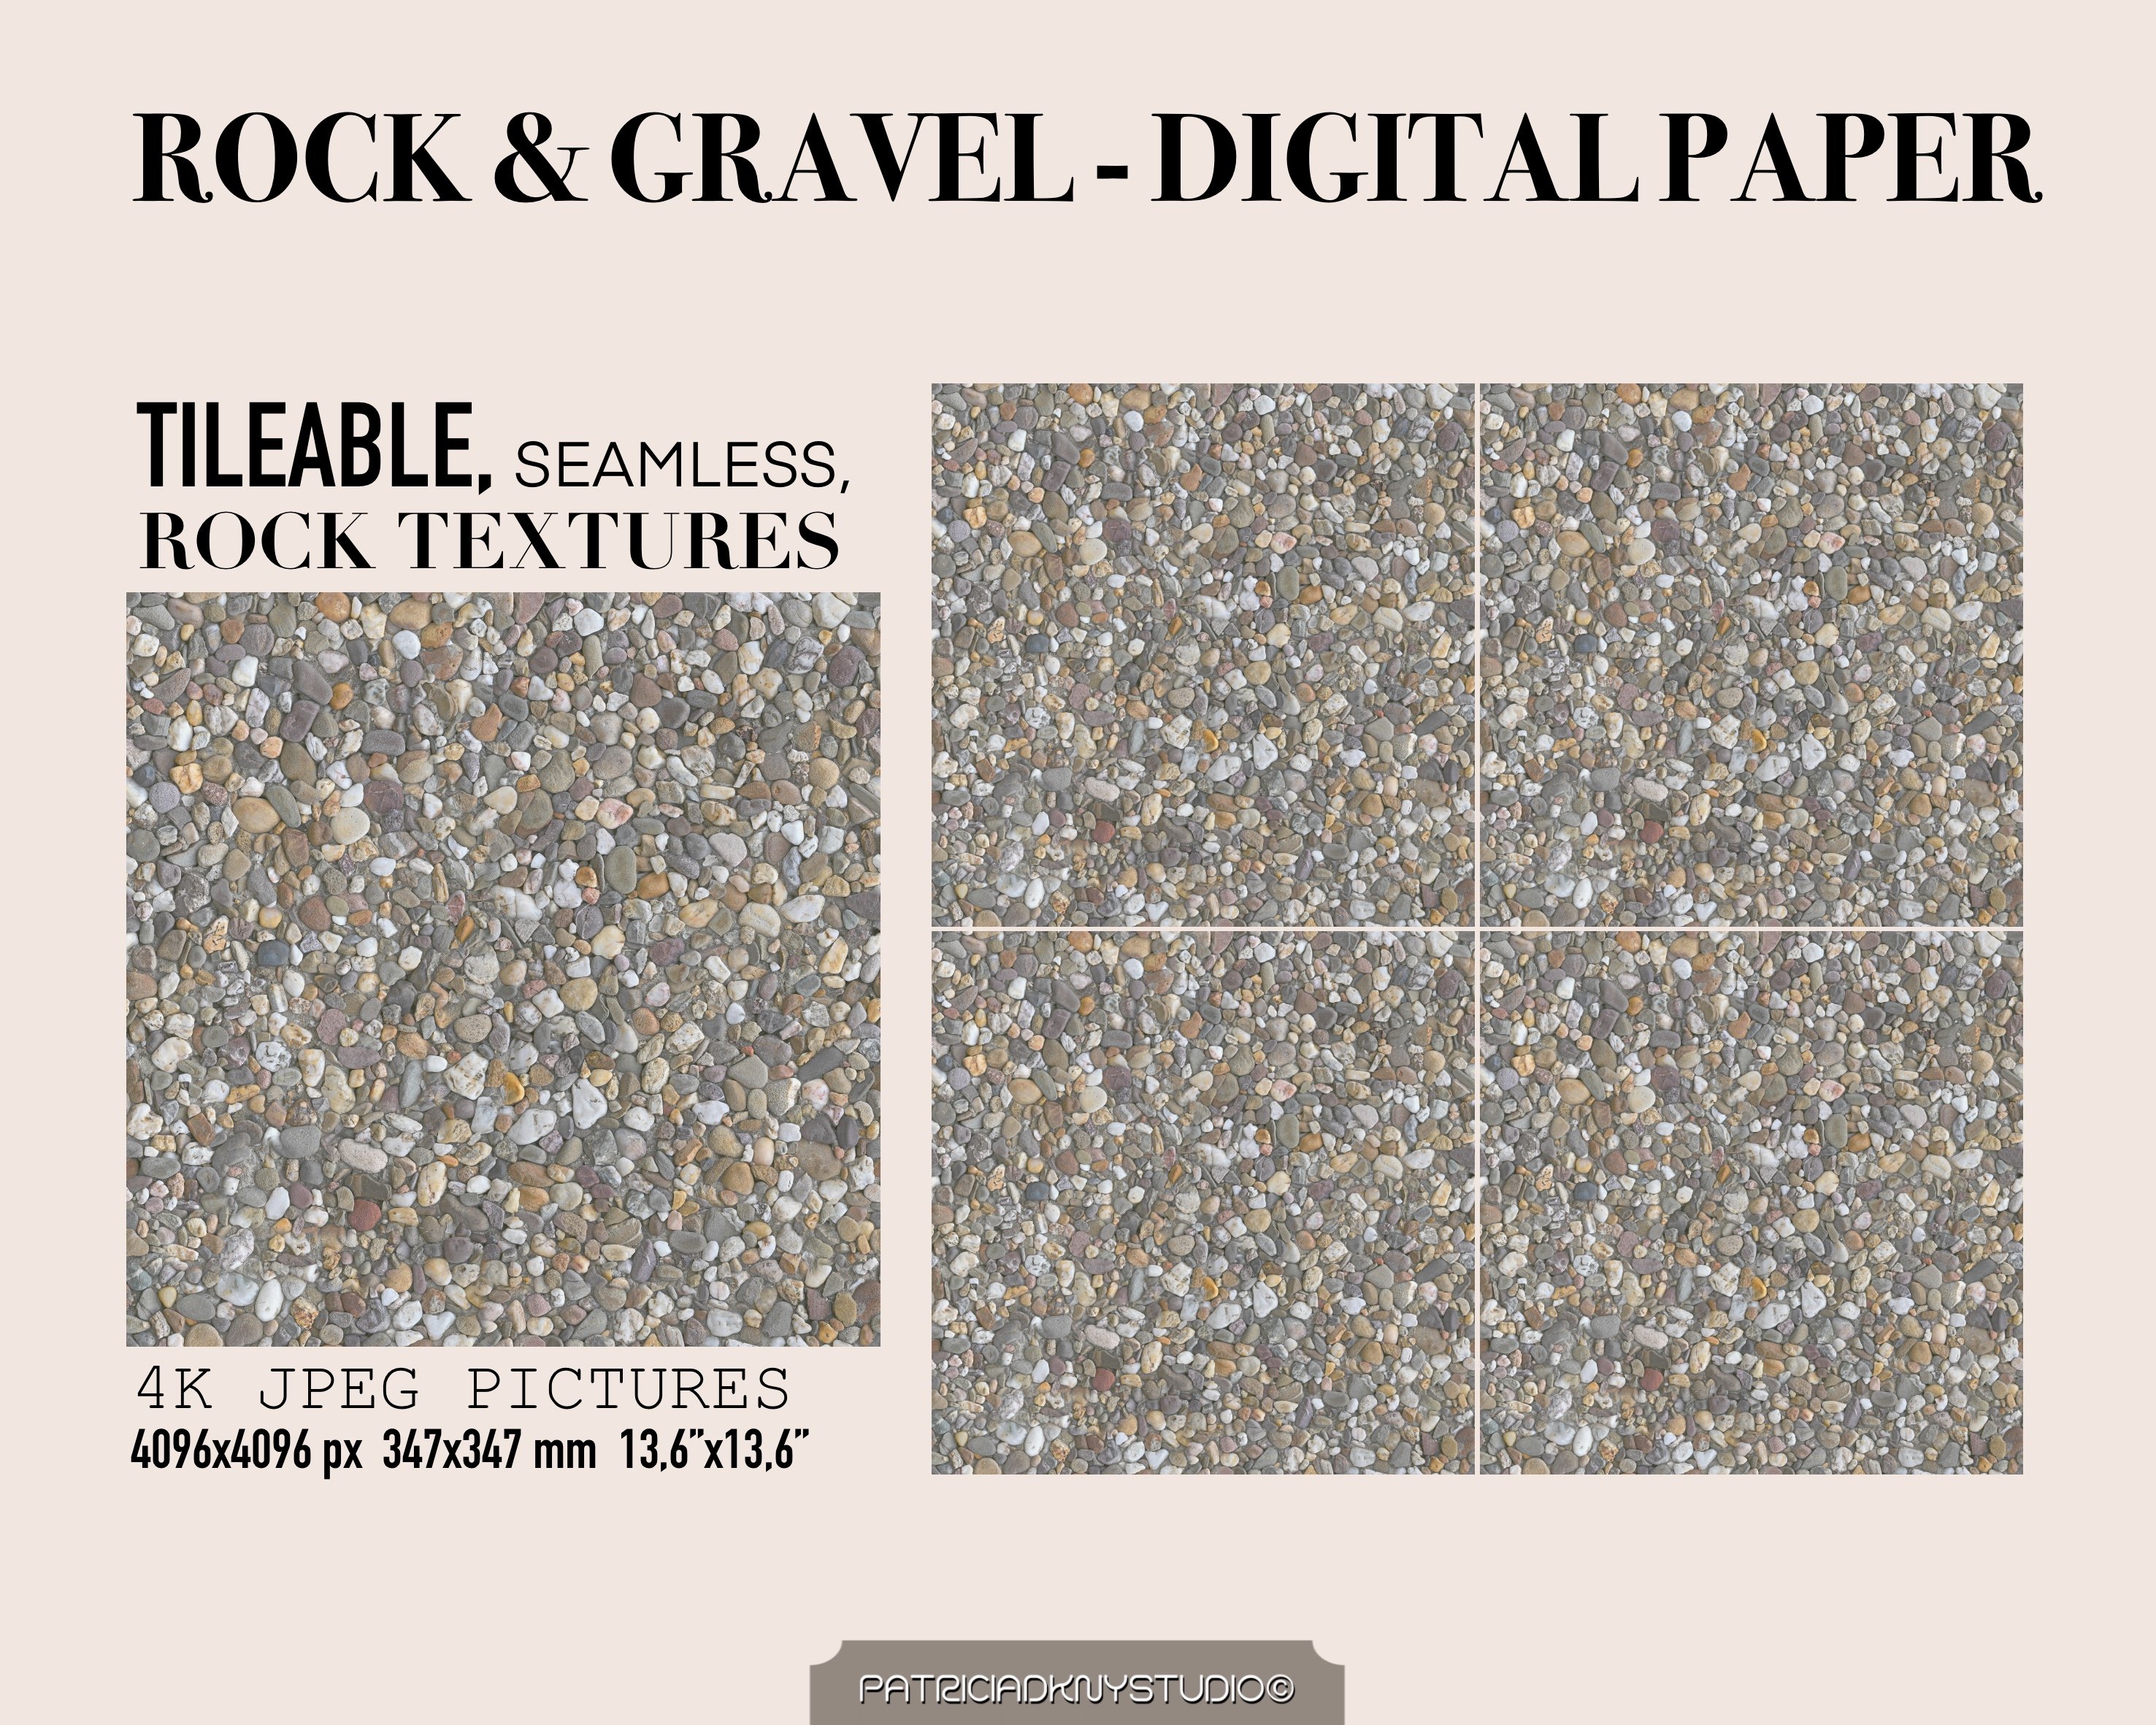 Digital Scrapbook Kit - You Rock